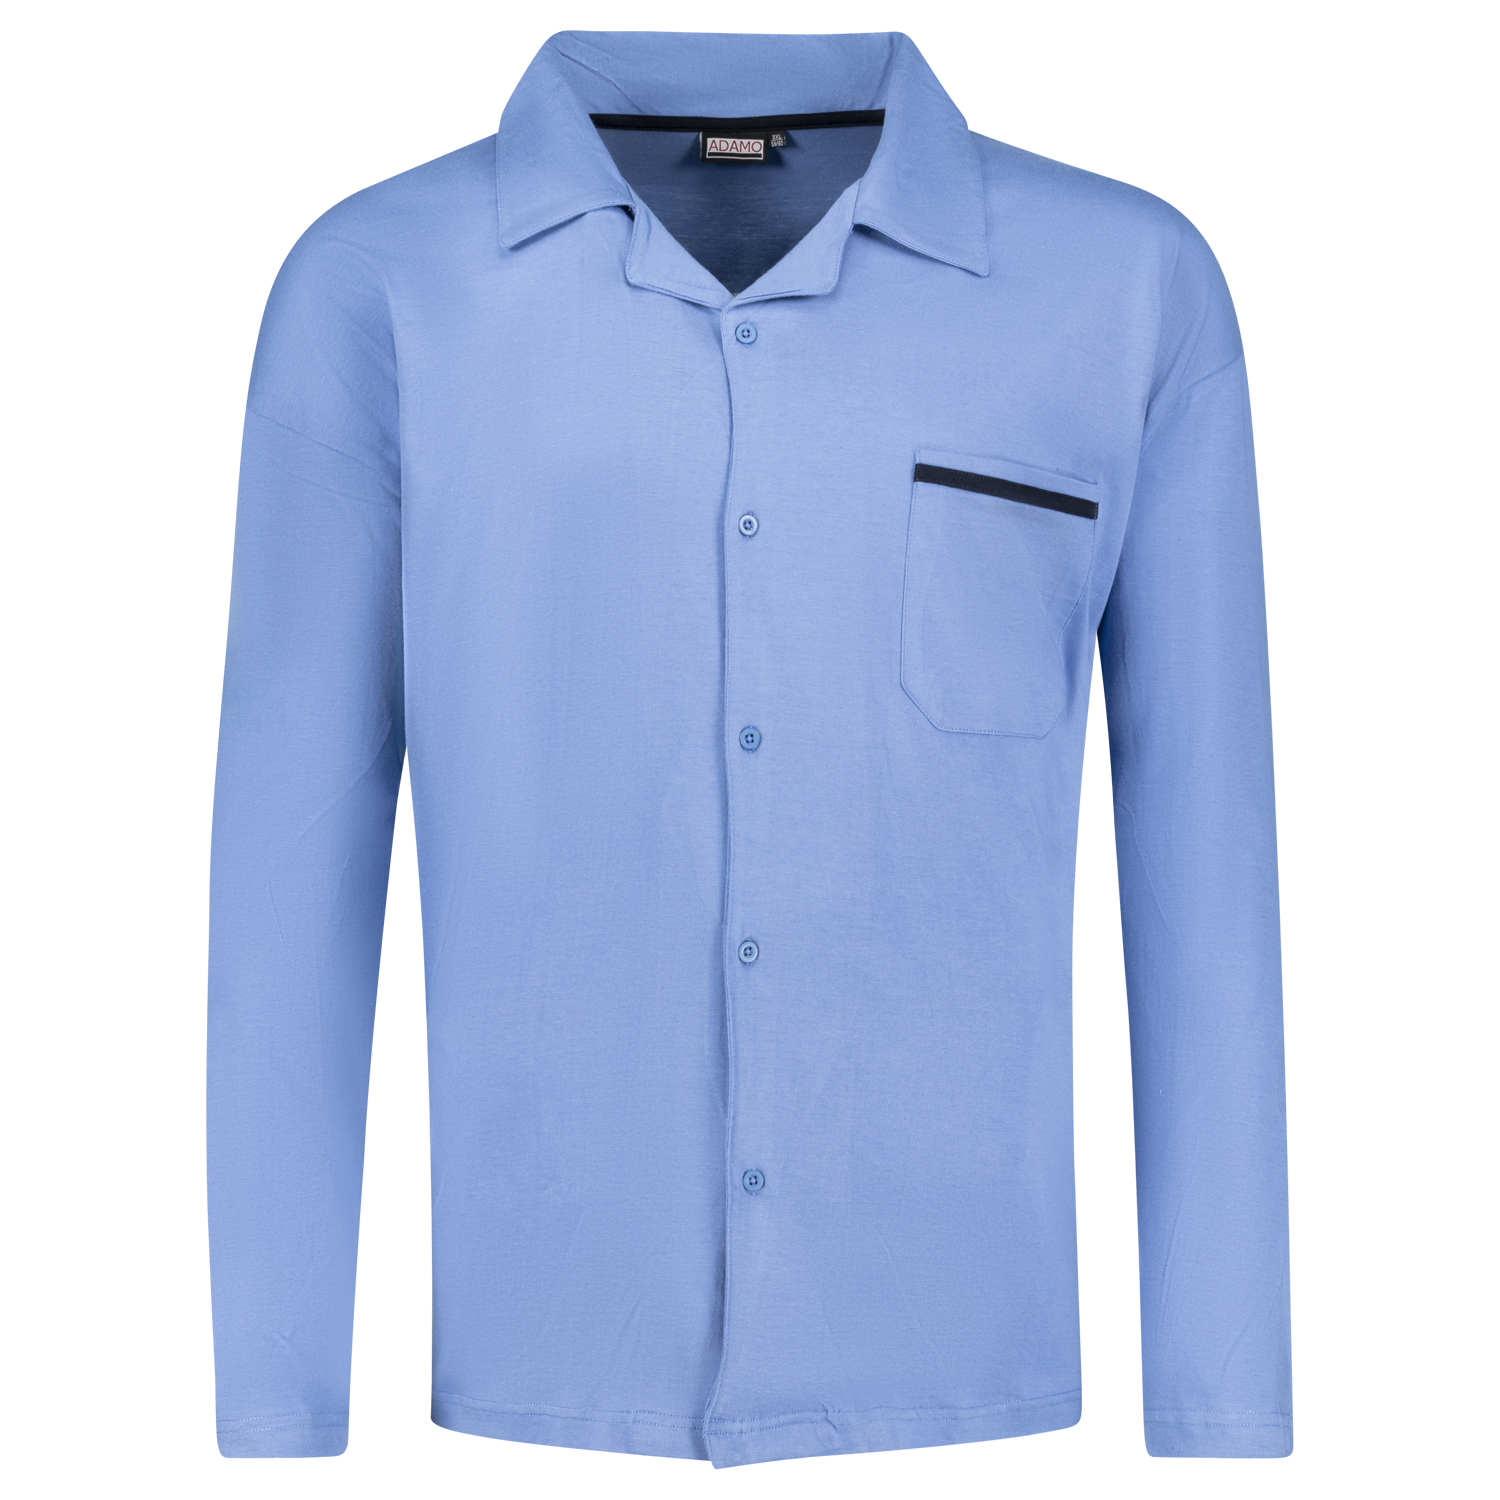 Langer Pyjama "Benno" mit Knopfleiste in hellblau von Adamo in Übergrößen bis 10XL